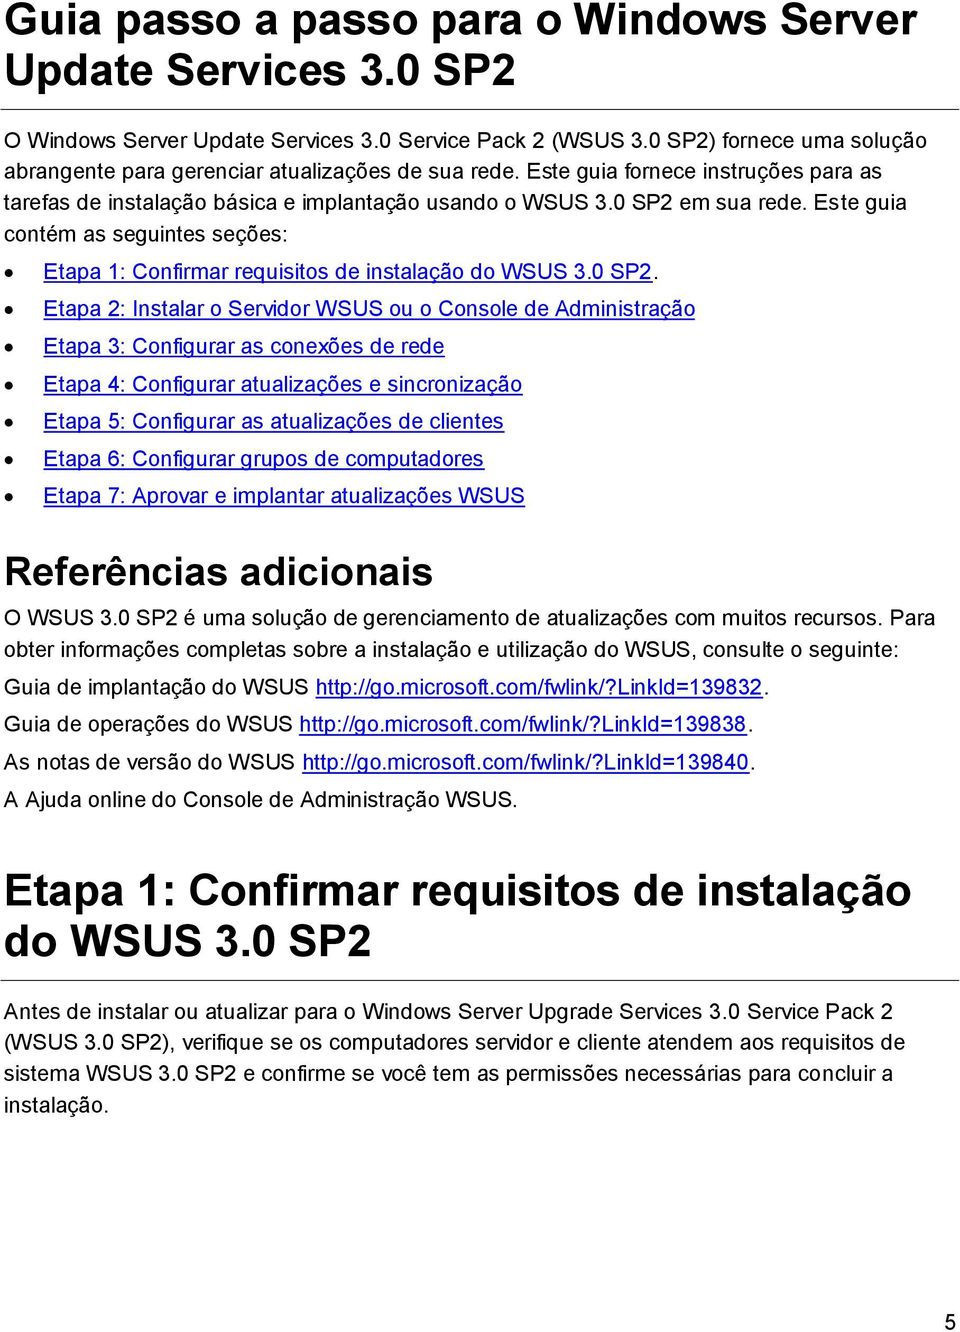 Este guia contém as seguintes seções: Etapa 1: Confirmar requisitos de instalação do WSUS 3.0 SP2.